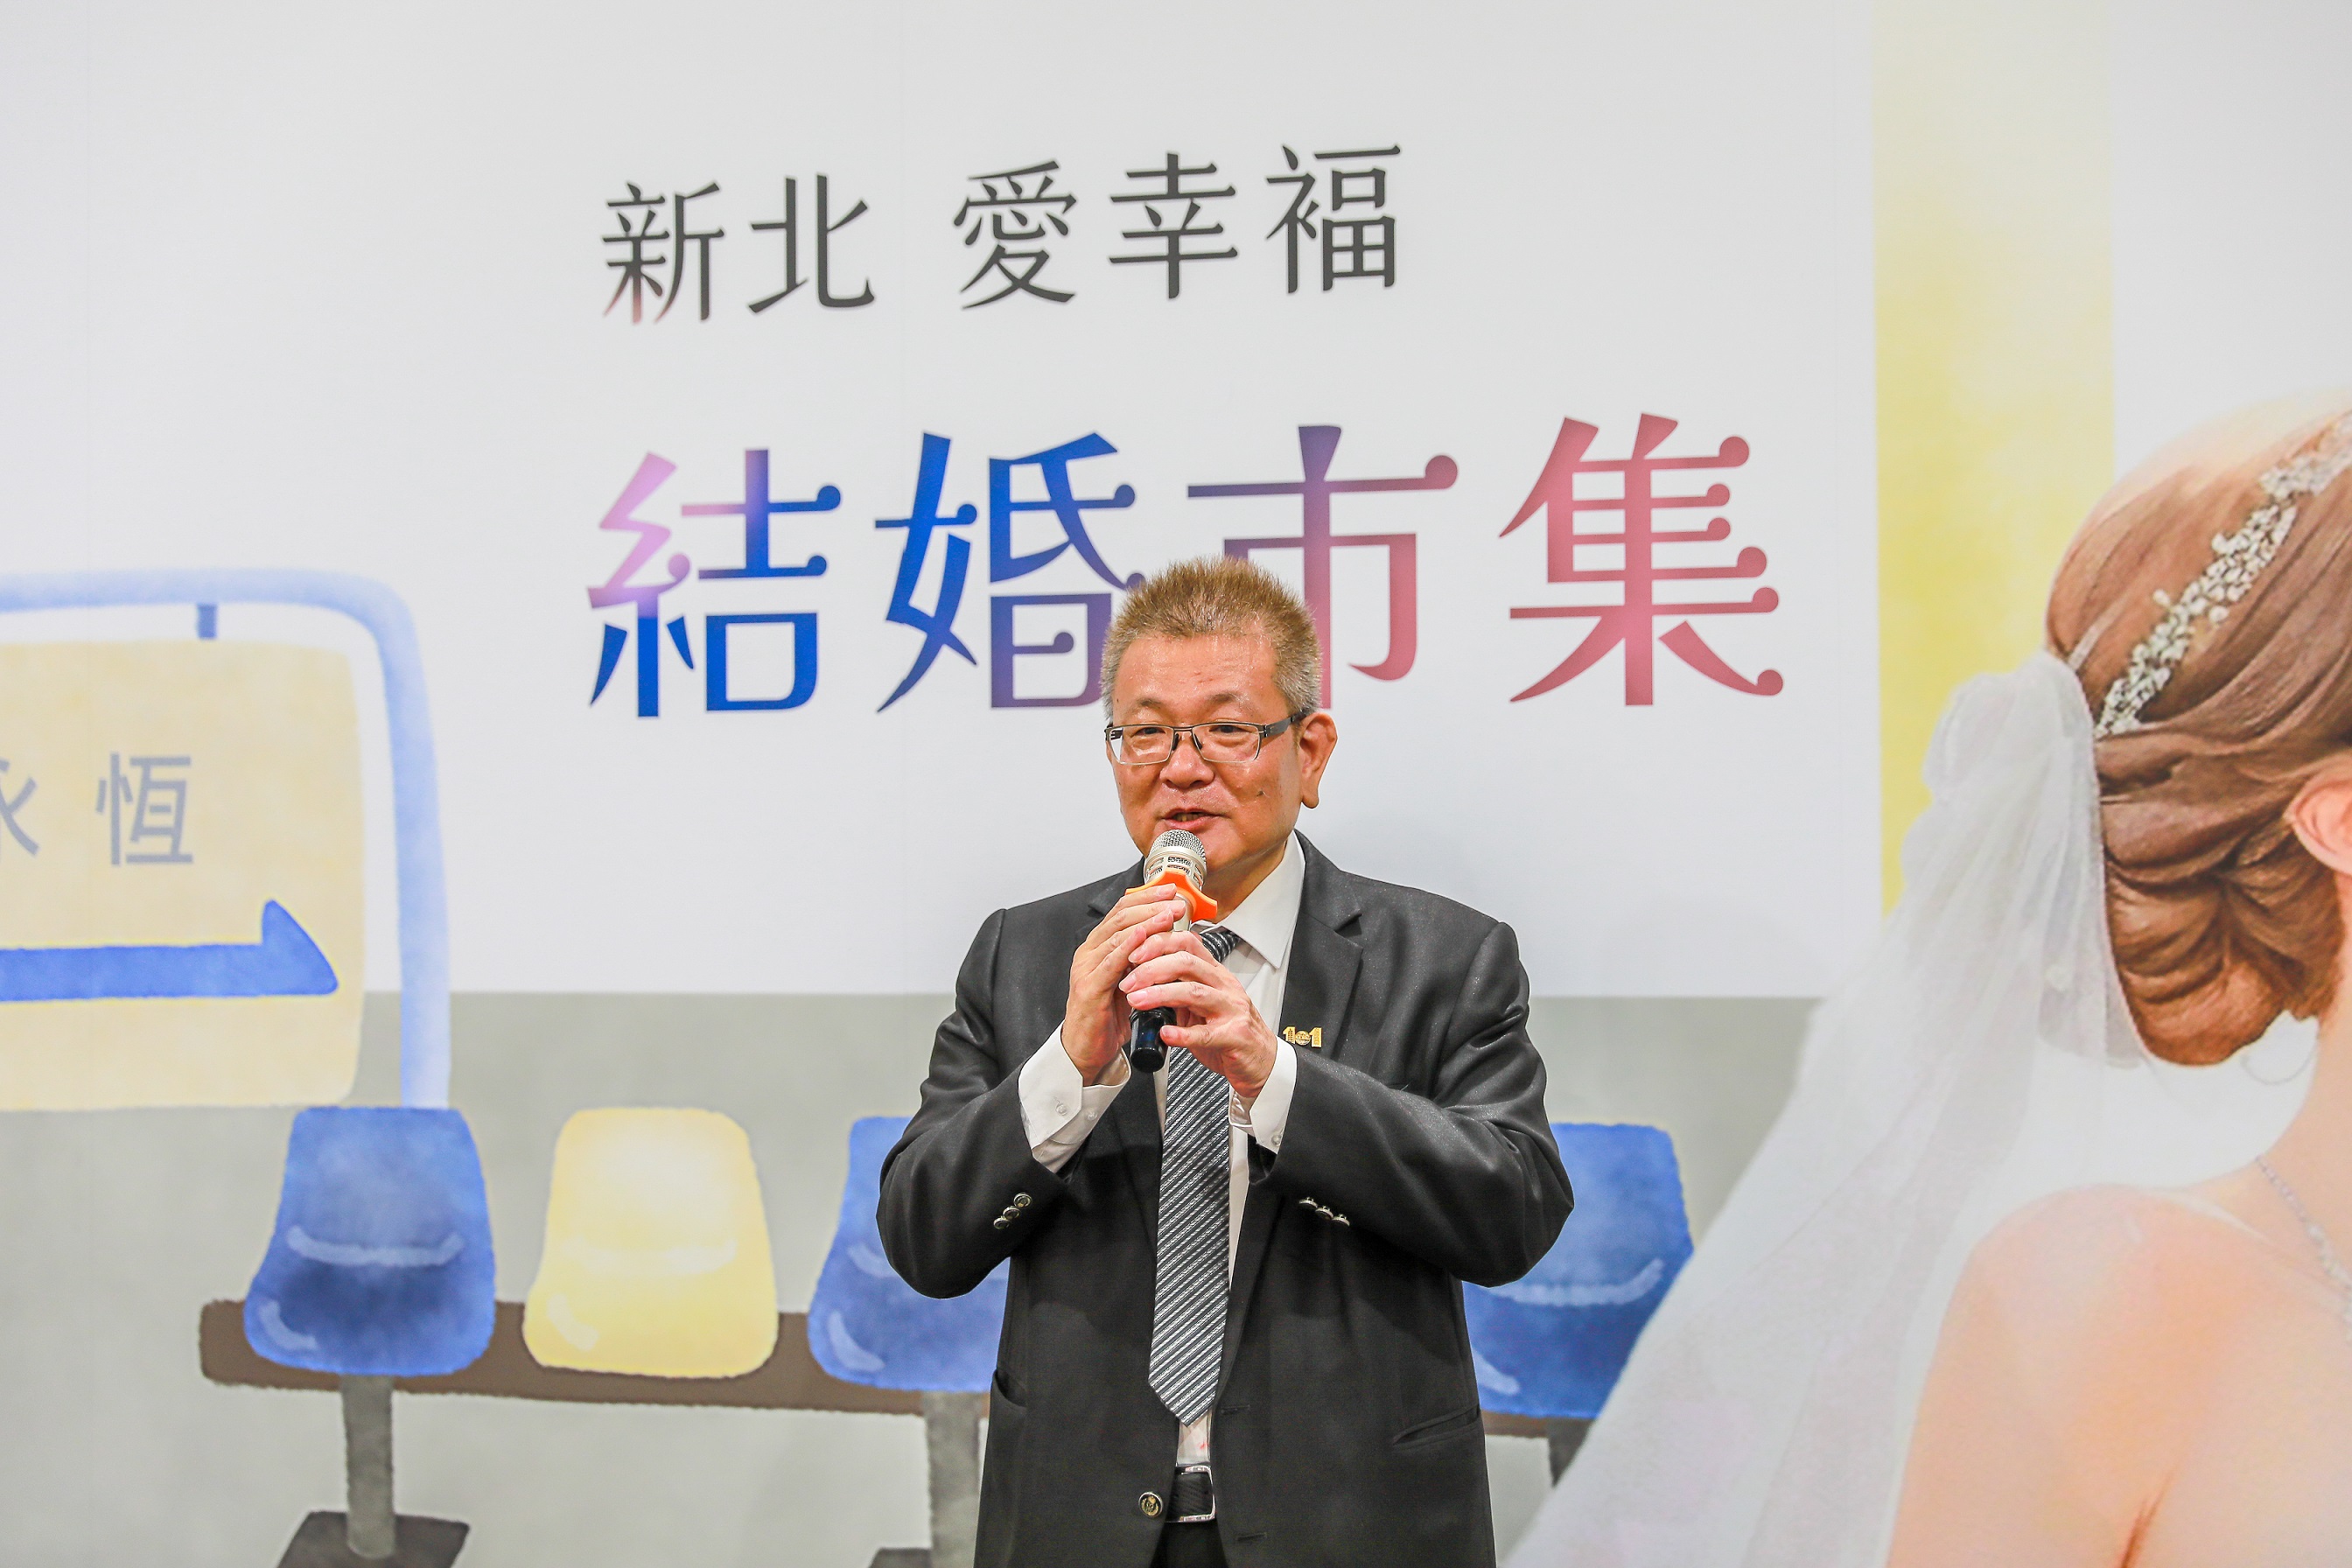 中華臺灣觀光旅拍婚禮產業發展協會高志榮理事長表示，新北很適合發展觀光旅拍婚禮，目前協會正規劃吸引海外新人，在新北的知名景點舉辦海外婚禮。